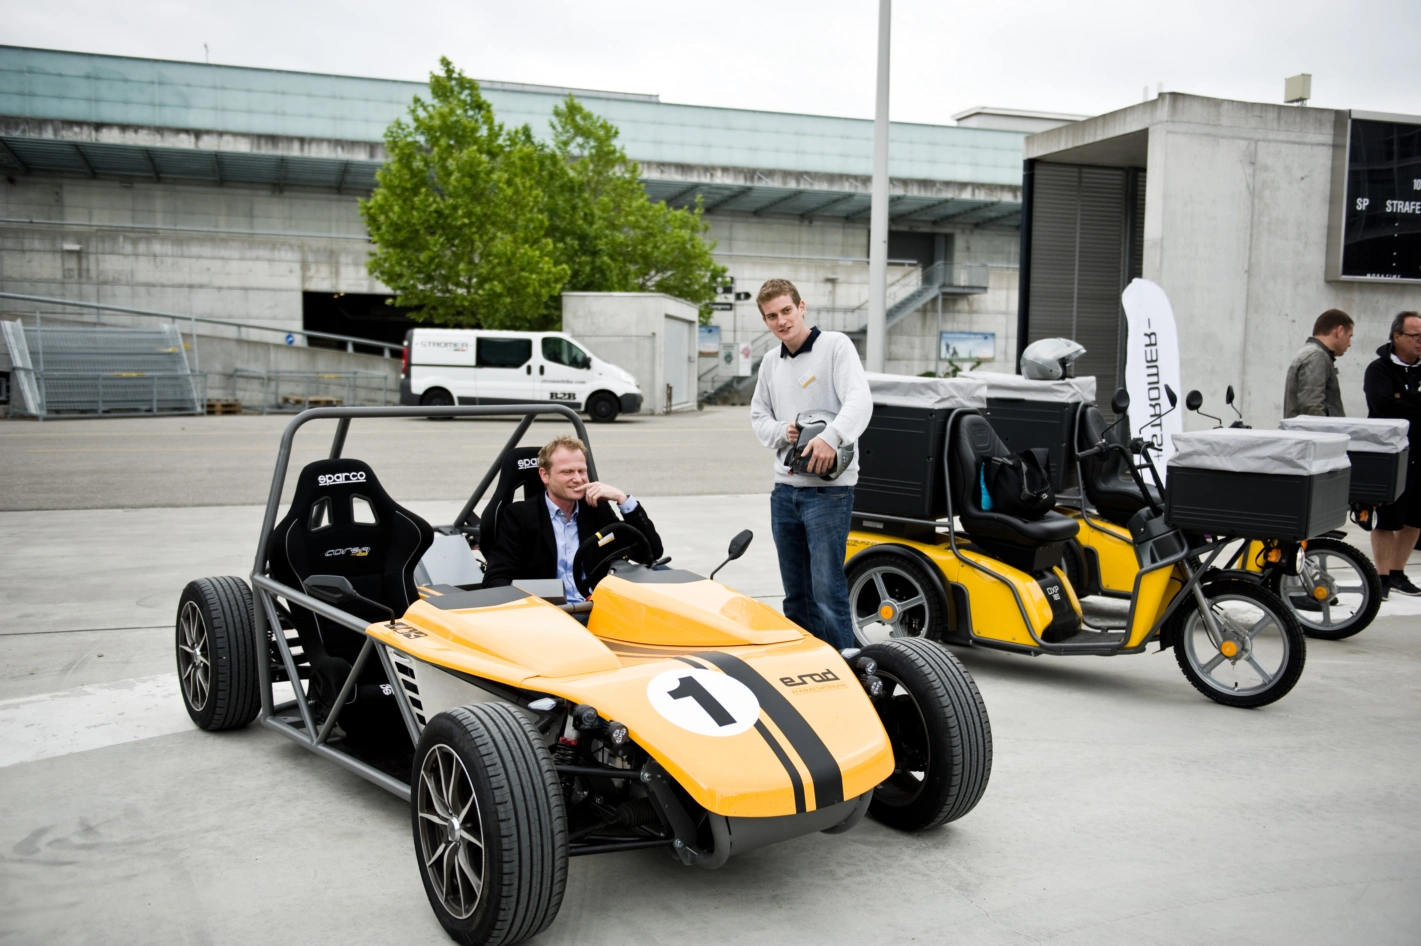 Peter Affolter von der Bern Fachhochschule in einem elektrischen Sportwagen der Firma Kyburz.